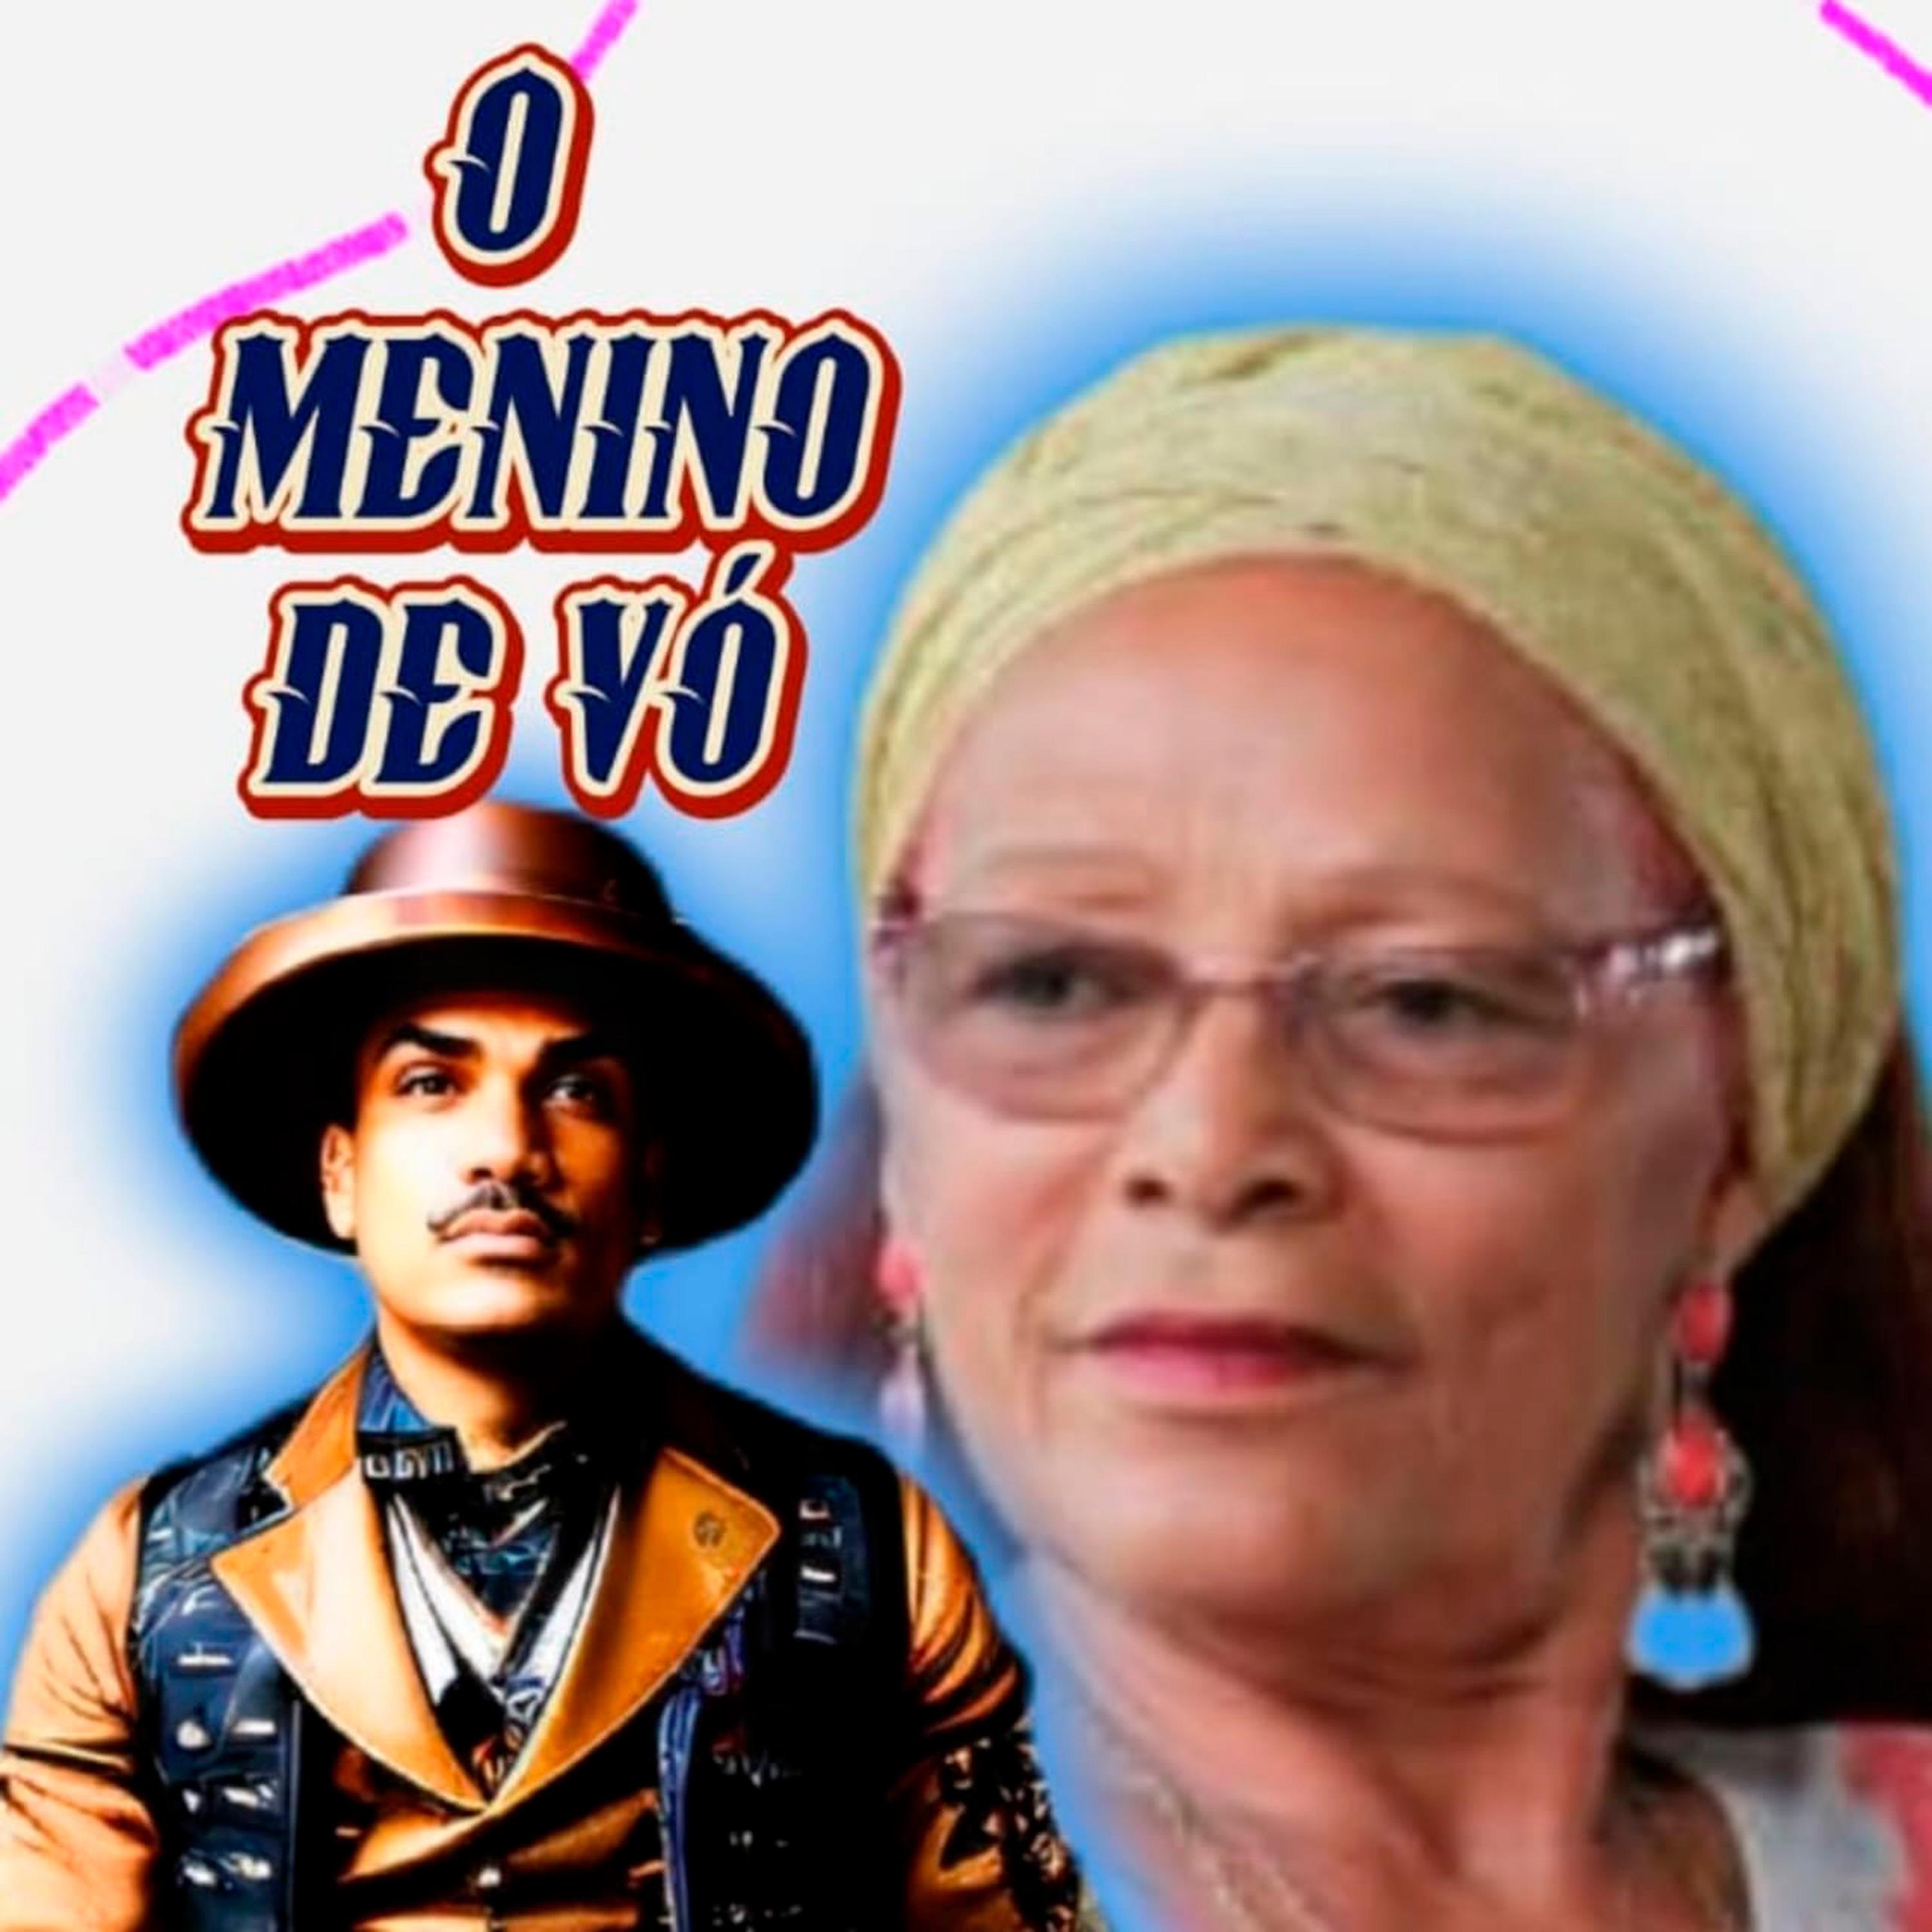 Постер альбома O Menino de Vó